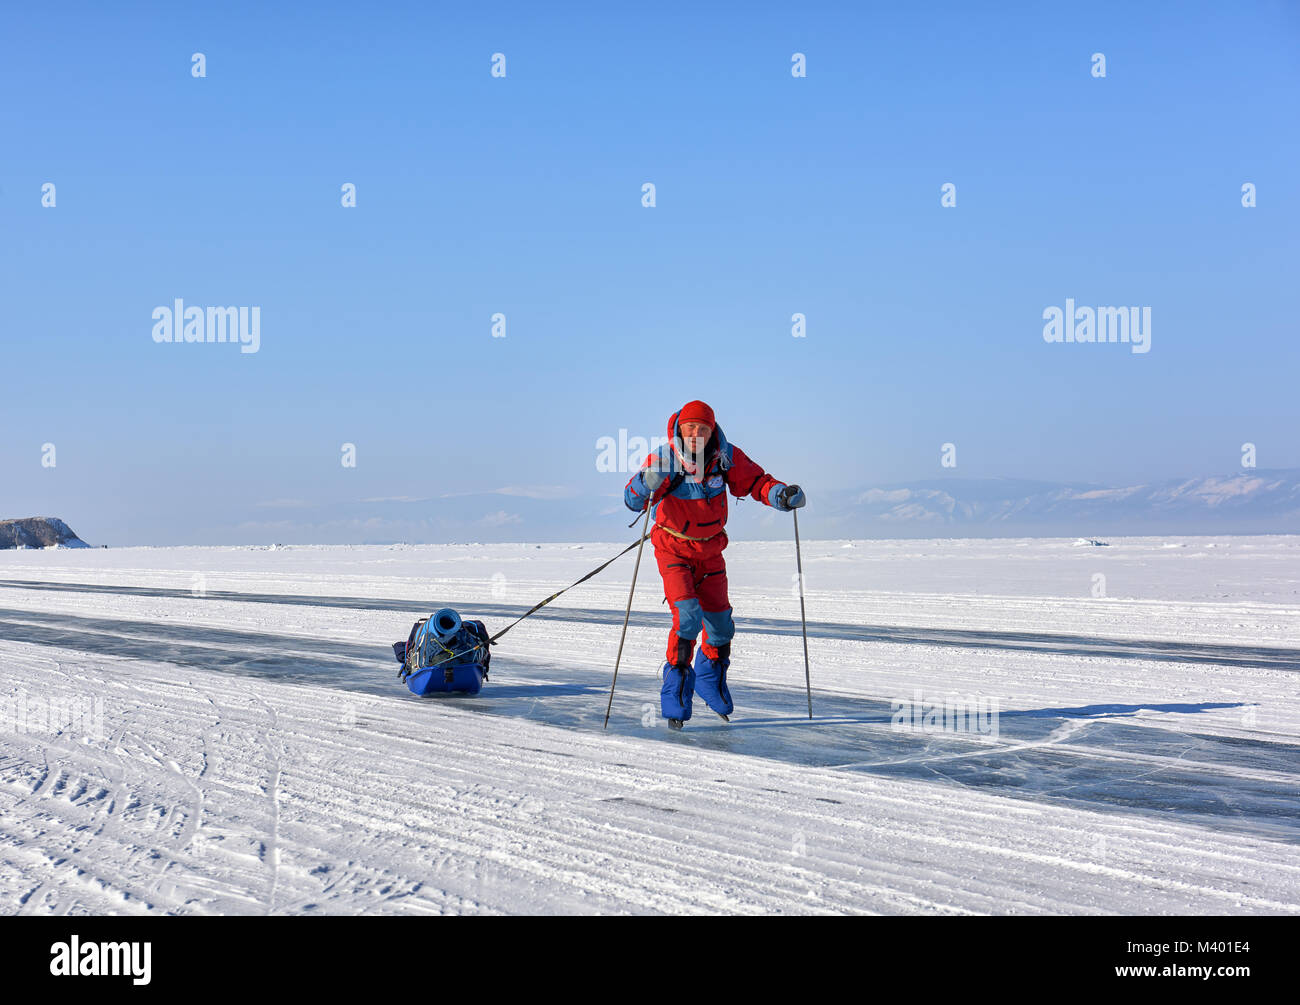 Le lac Baïkal, région d'Irkoutsk, RUSSIE - 08 mars 2017 : Un homme est le patinage sur glace. Membre de l'expédition d'hiver au Lac Baikal Banque D'Images